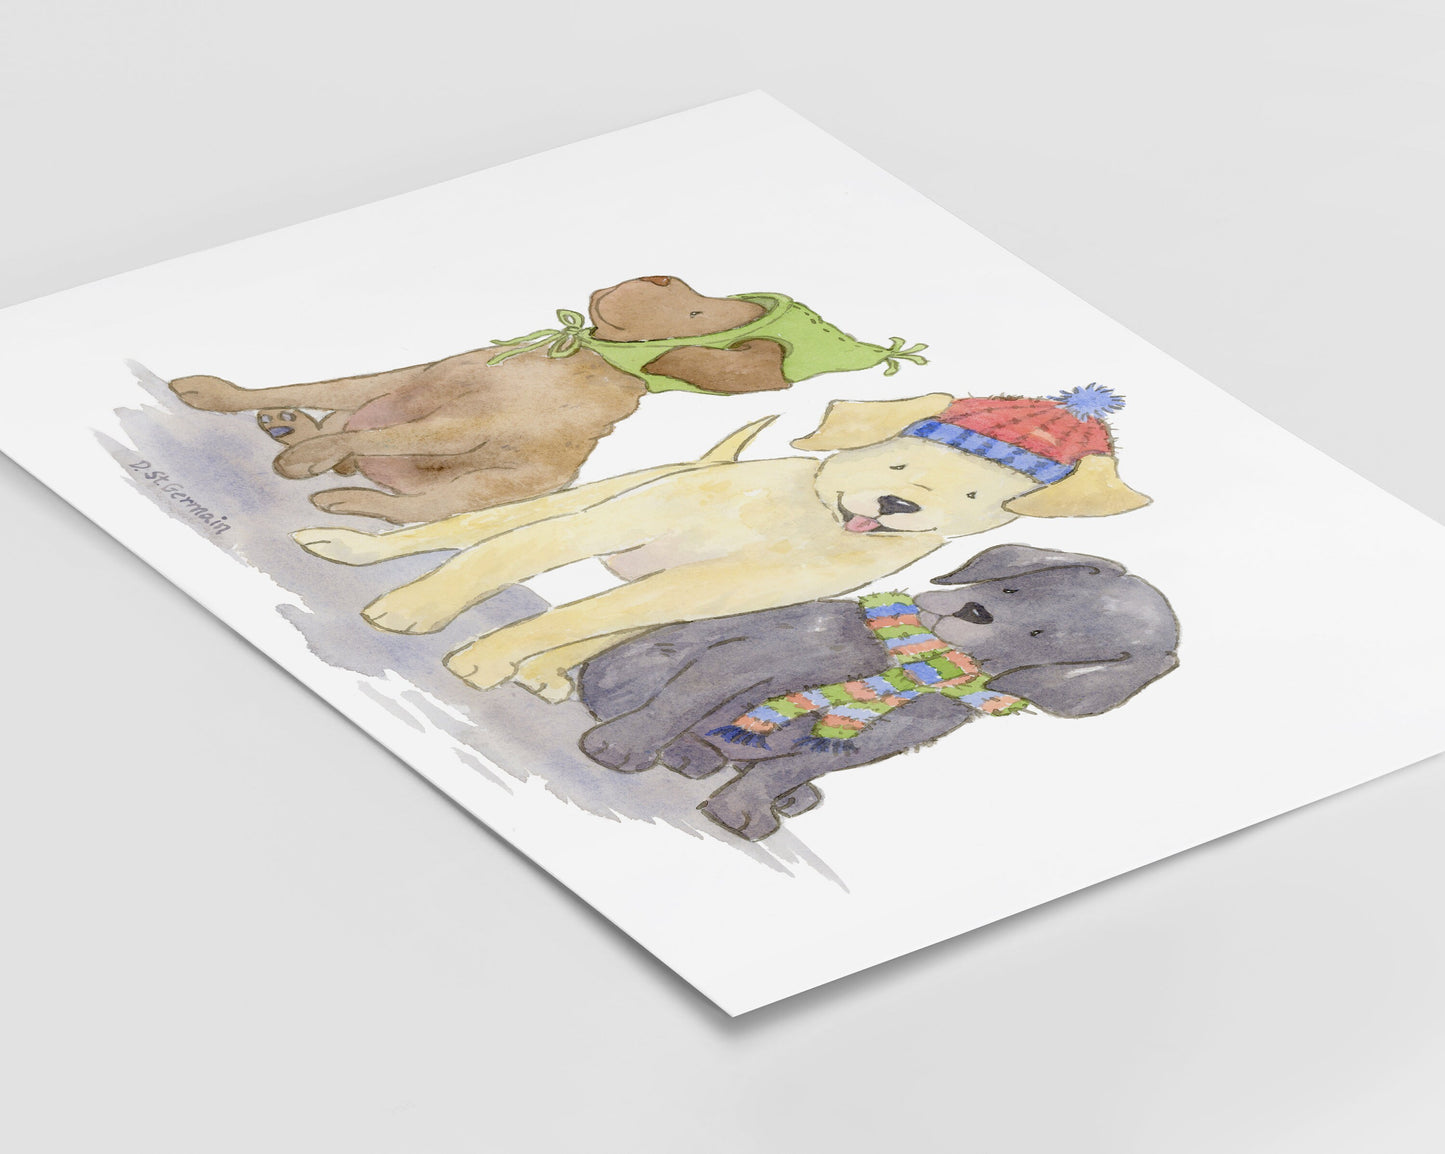 Labrador Retriever Holiday Art Print